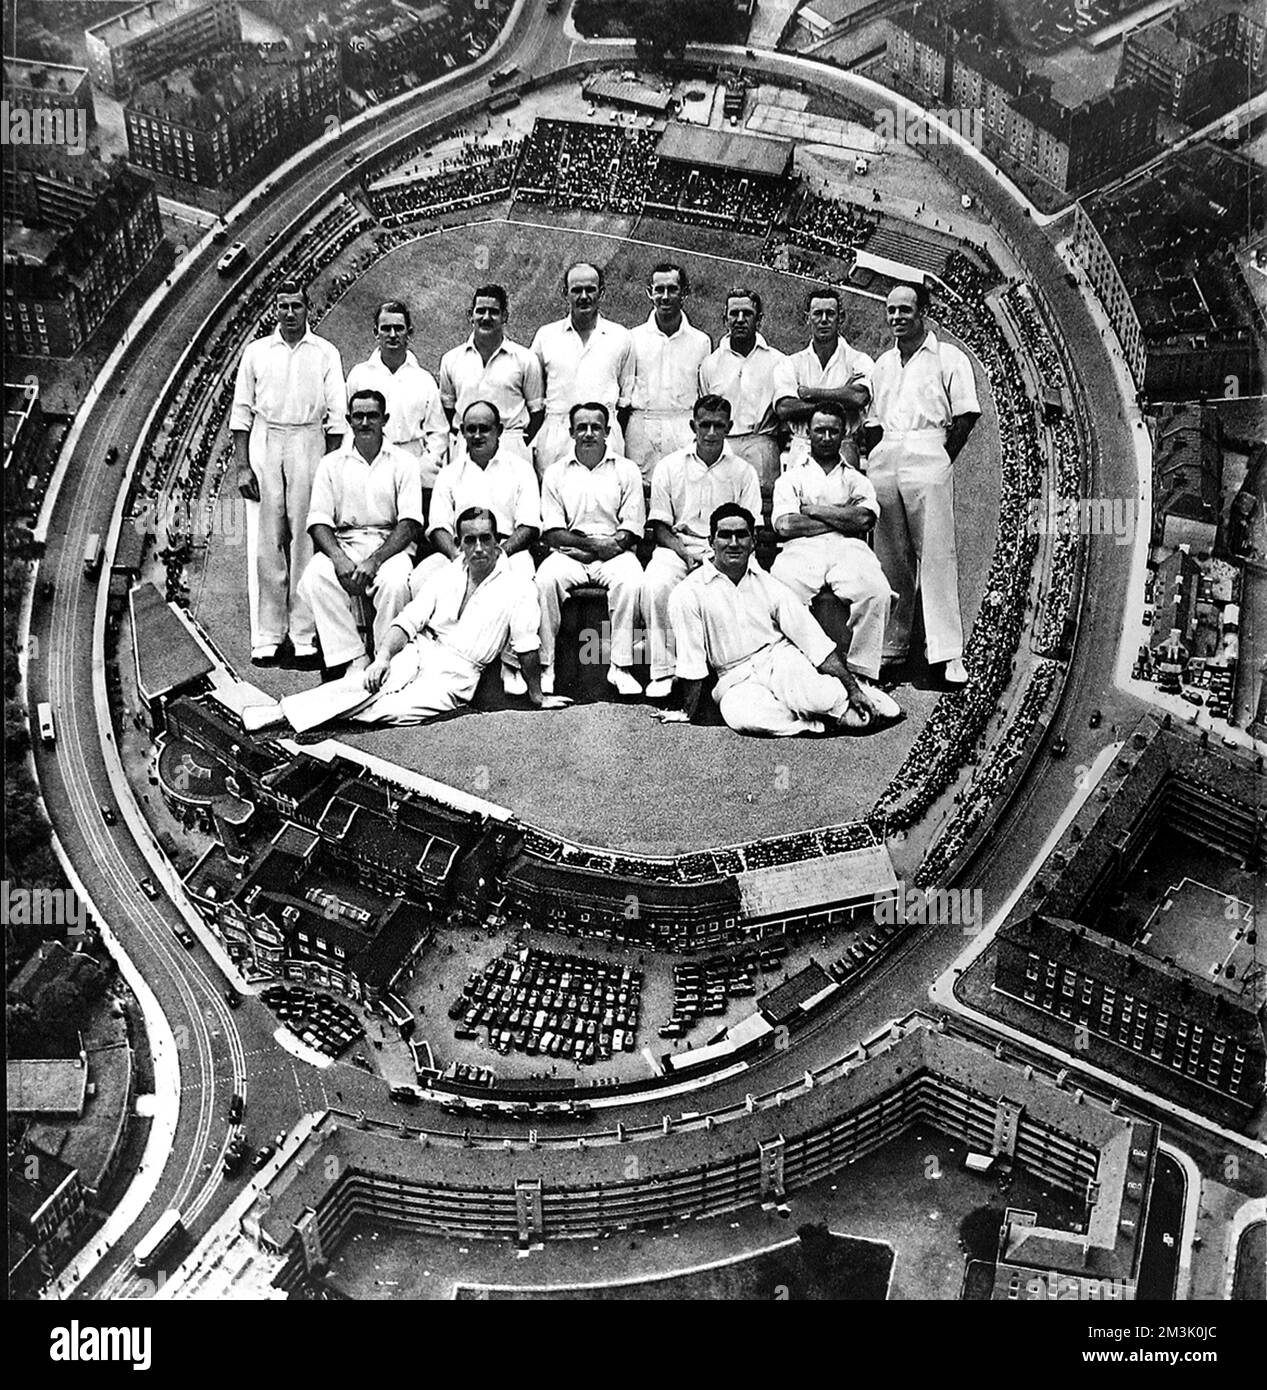 Fotomontage des australischen Cricket-Teams, das 1938 England bereiste und sich auf den Oval Cricket Ground in Kennington, London, aufsetzte. Die Australier gewannen in diesem Jahr die Testserie und hielten damit die „Asche“. Hintere Reihe, von links nach rechts: E.C. McCormick, M.G. WARTE, L. O'B. Fleetwood-Smith, W.J. O'Reilly, E.S. Weiß, F.A. Ward, W.A. Braun, J. Fingleton. Mittlere Reihe, von links nach rechts: S. Barnes, S.J. McCabe, D.G. Bradman (Kapitän), B.A. Barnett, C.W. Walker. Erste Reihe, von links nach rechts: A.L. Hassett, C.L. Badcock. 1938 Stockfoto